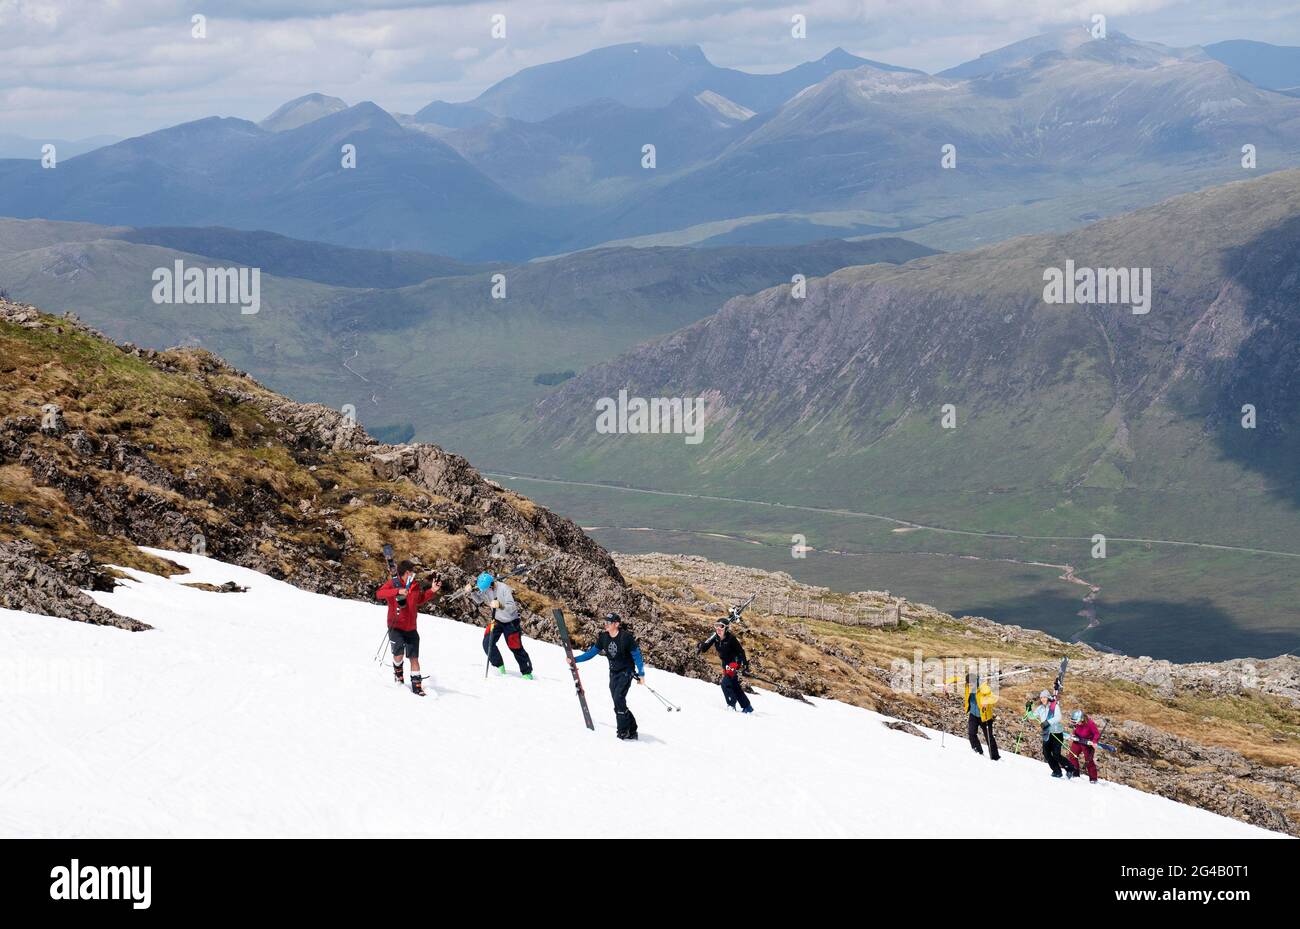 Les skieurs et les snowboardeurs grimpent jusqu'aux restes de neige sur Meall a'Bhuiridh à Glencoe pour prendre part au ski de milieu d'été. L'événement, organisé par le Glencoe Mountain Resort, se tient chaque année le week-end le plus proche du solstice d'été. Date de la photo: Dimanche 20 juin 2021. Banque D'Images